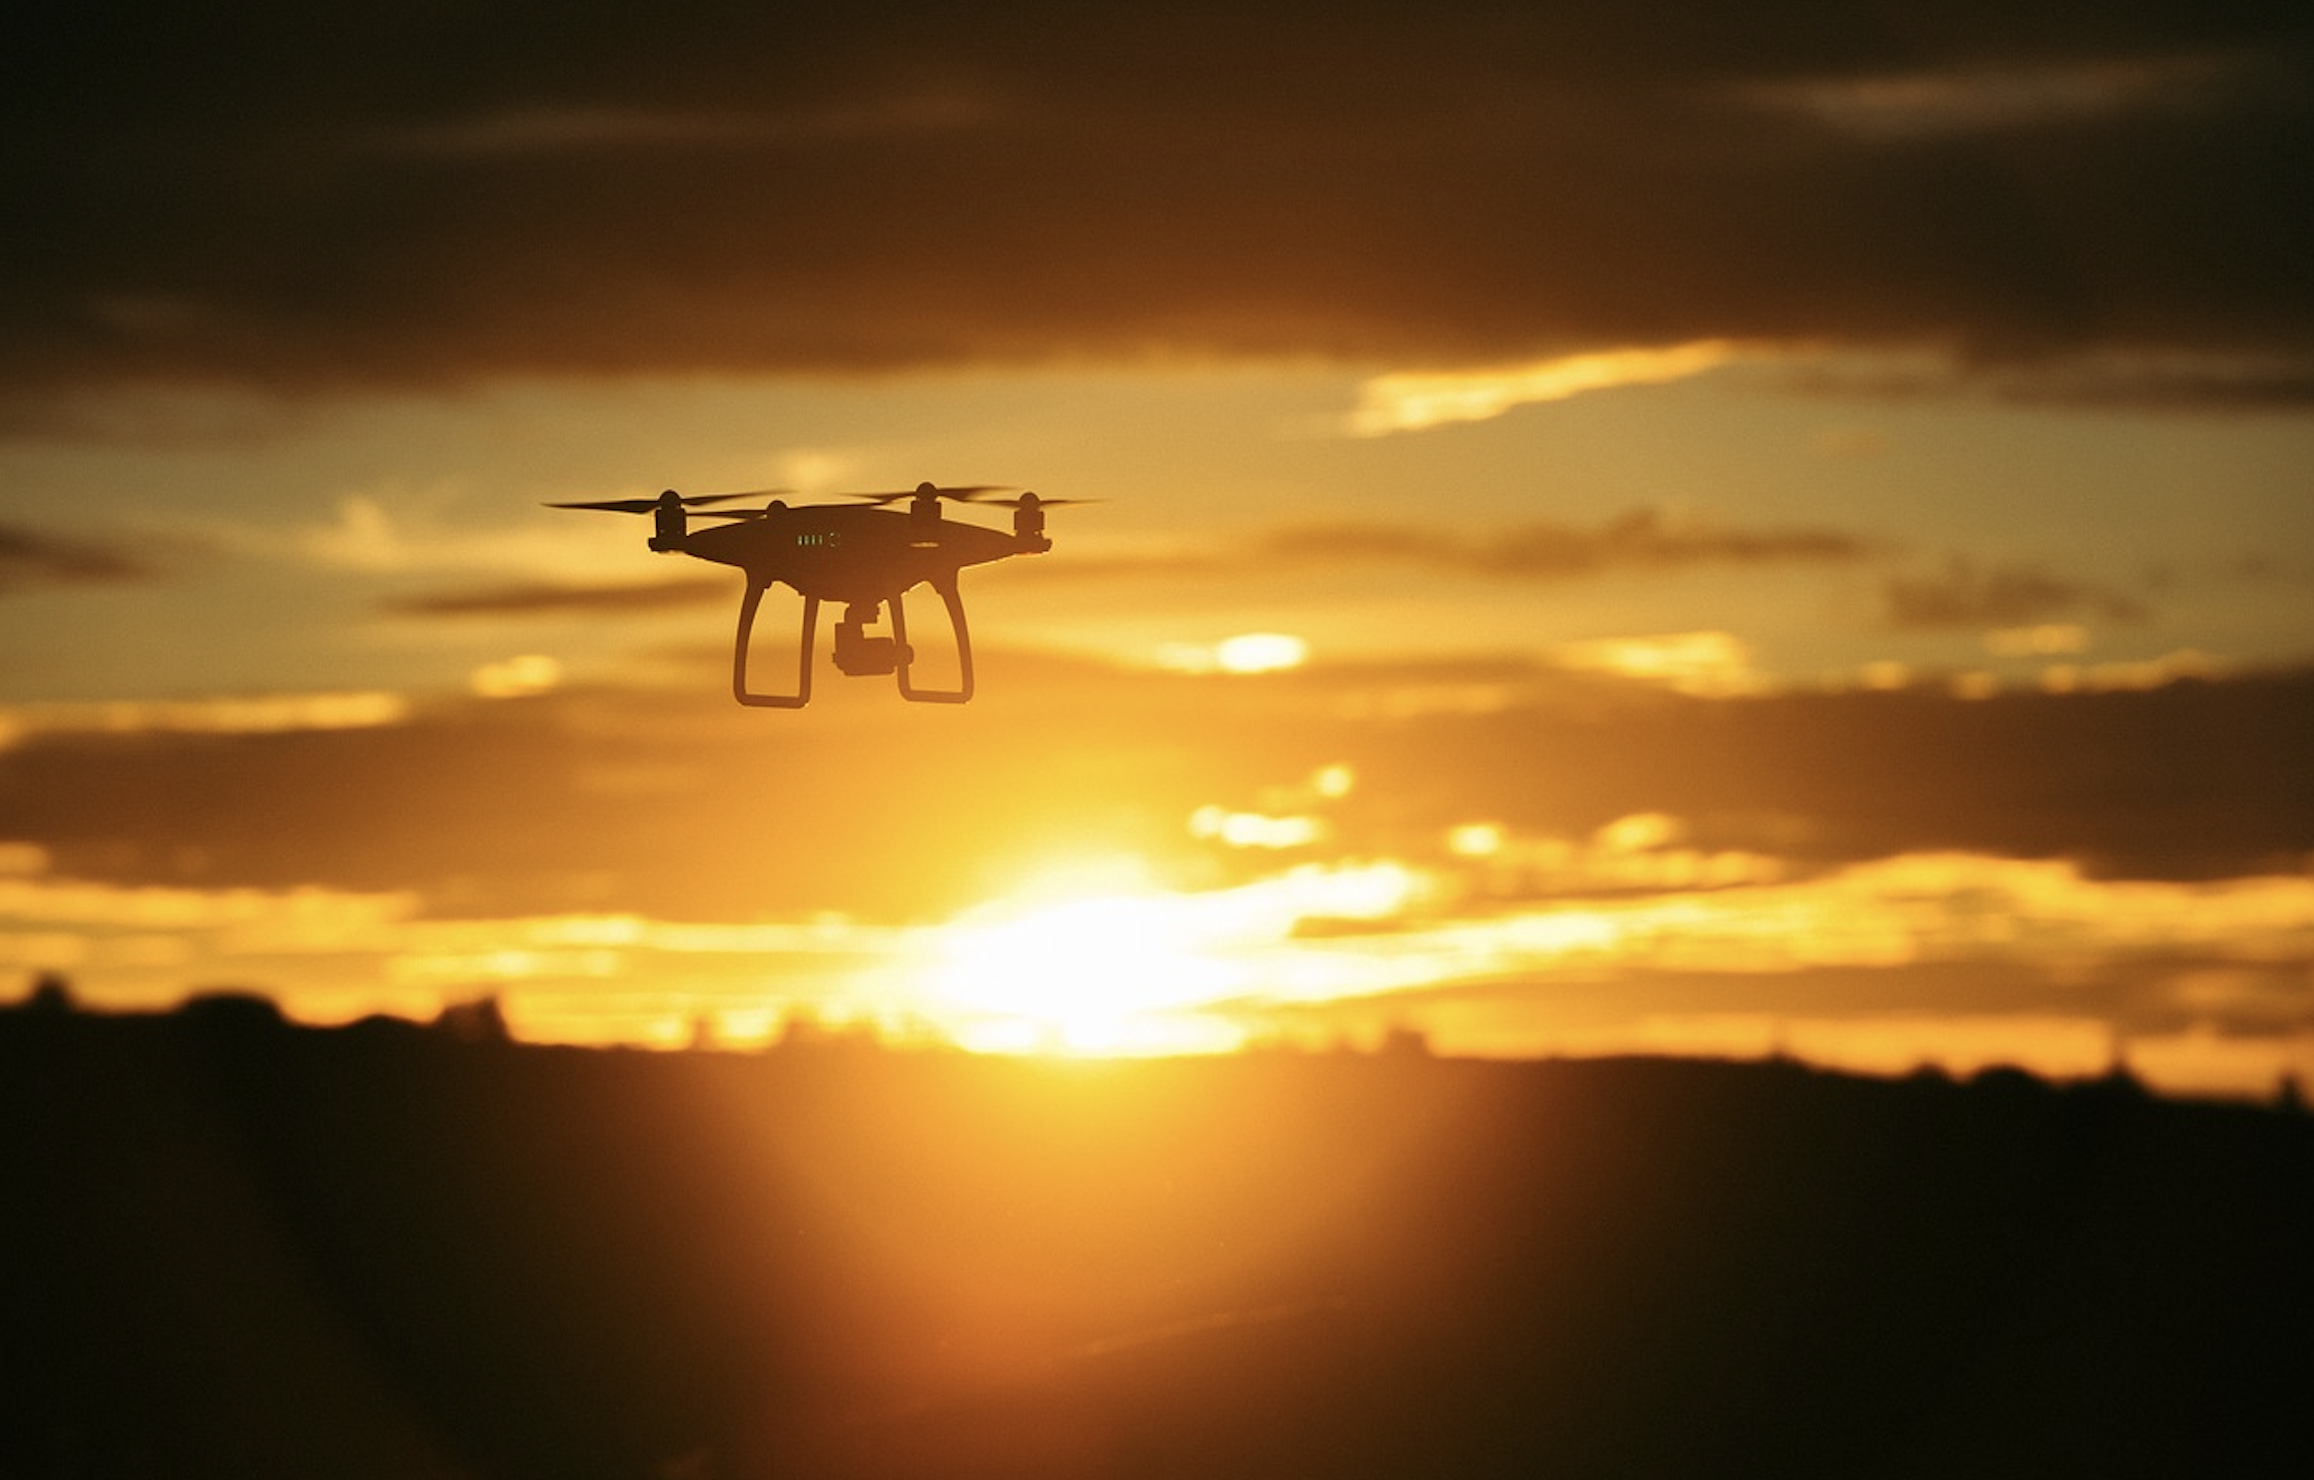 Άμυνα εναντίον σμηνών drones με εκπομπή μικροκυματικού παλμού από φίλια drones